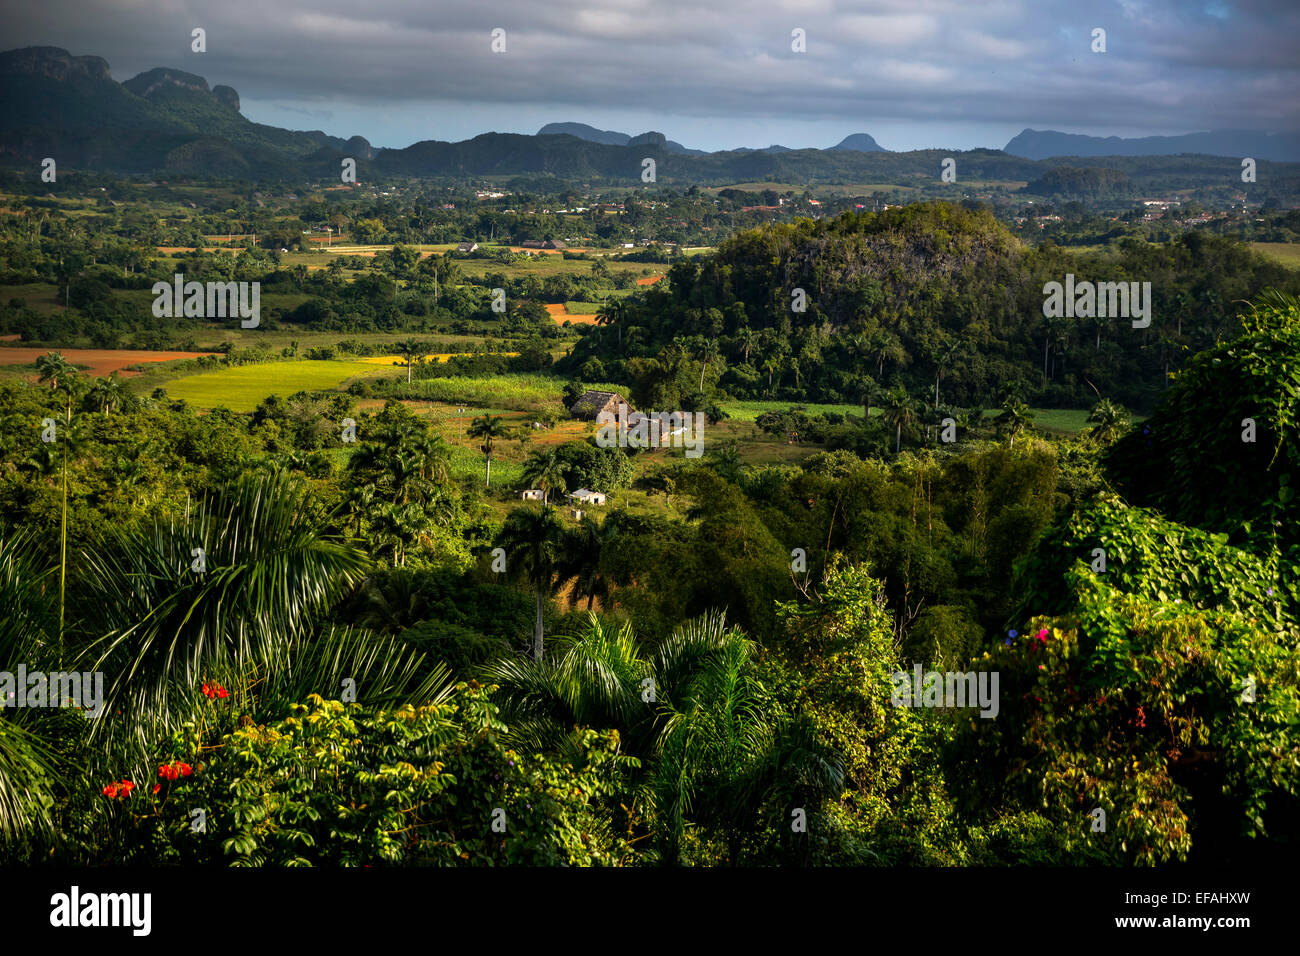 Les champs de tabac et les montagnes karstiques des mogotes, Valle de Vinales, Viñales, province de Pinar del Rio, Cuba Banque D'Images